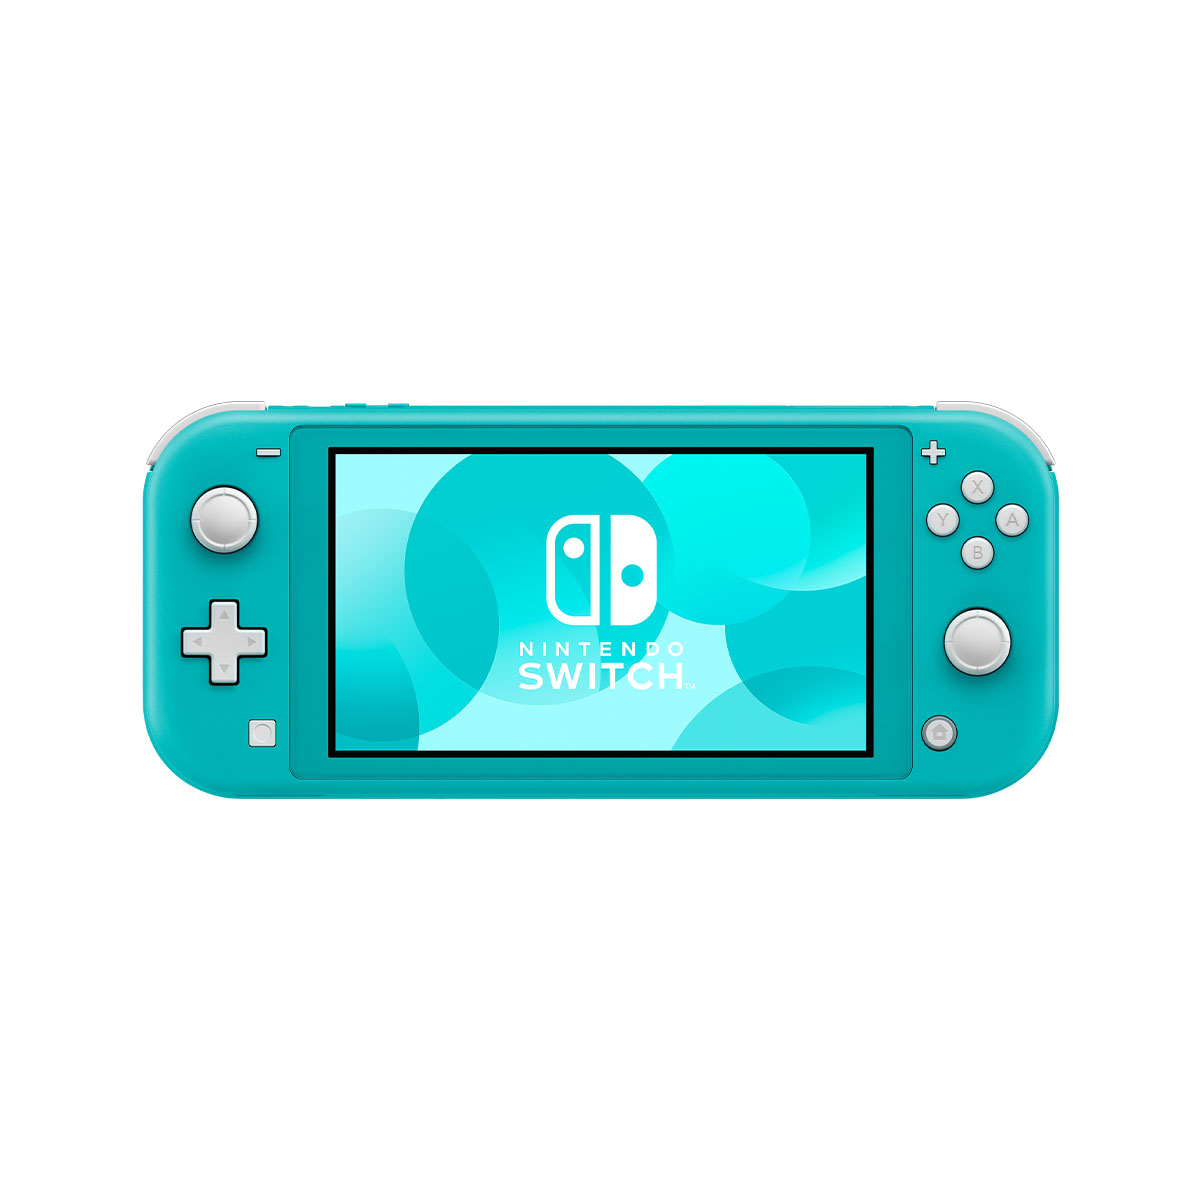 Consolas Nintendo Switch · Videojuegos · El Corte Inglés (8)